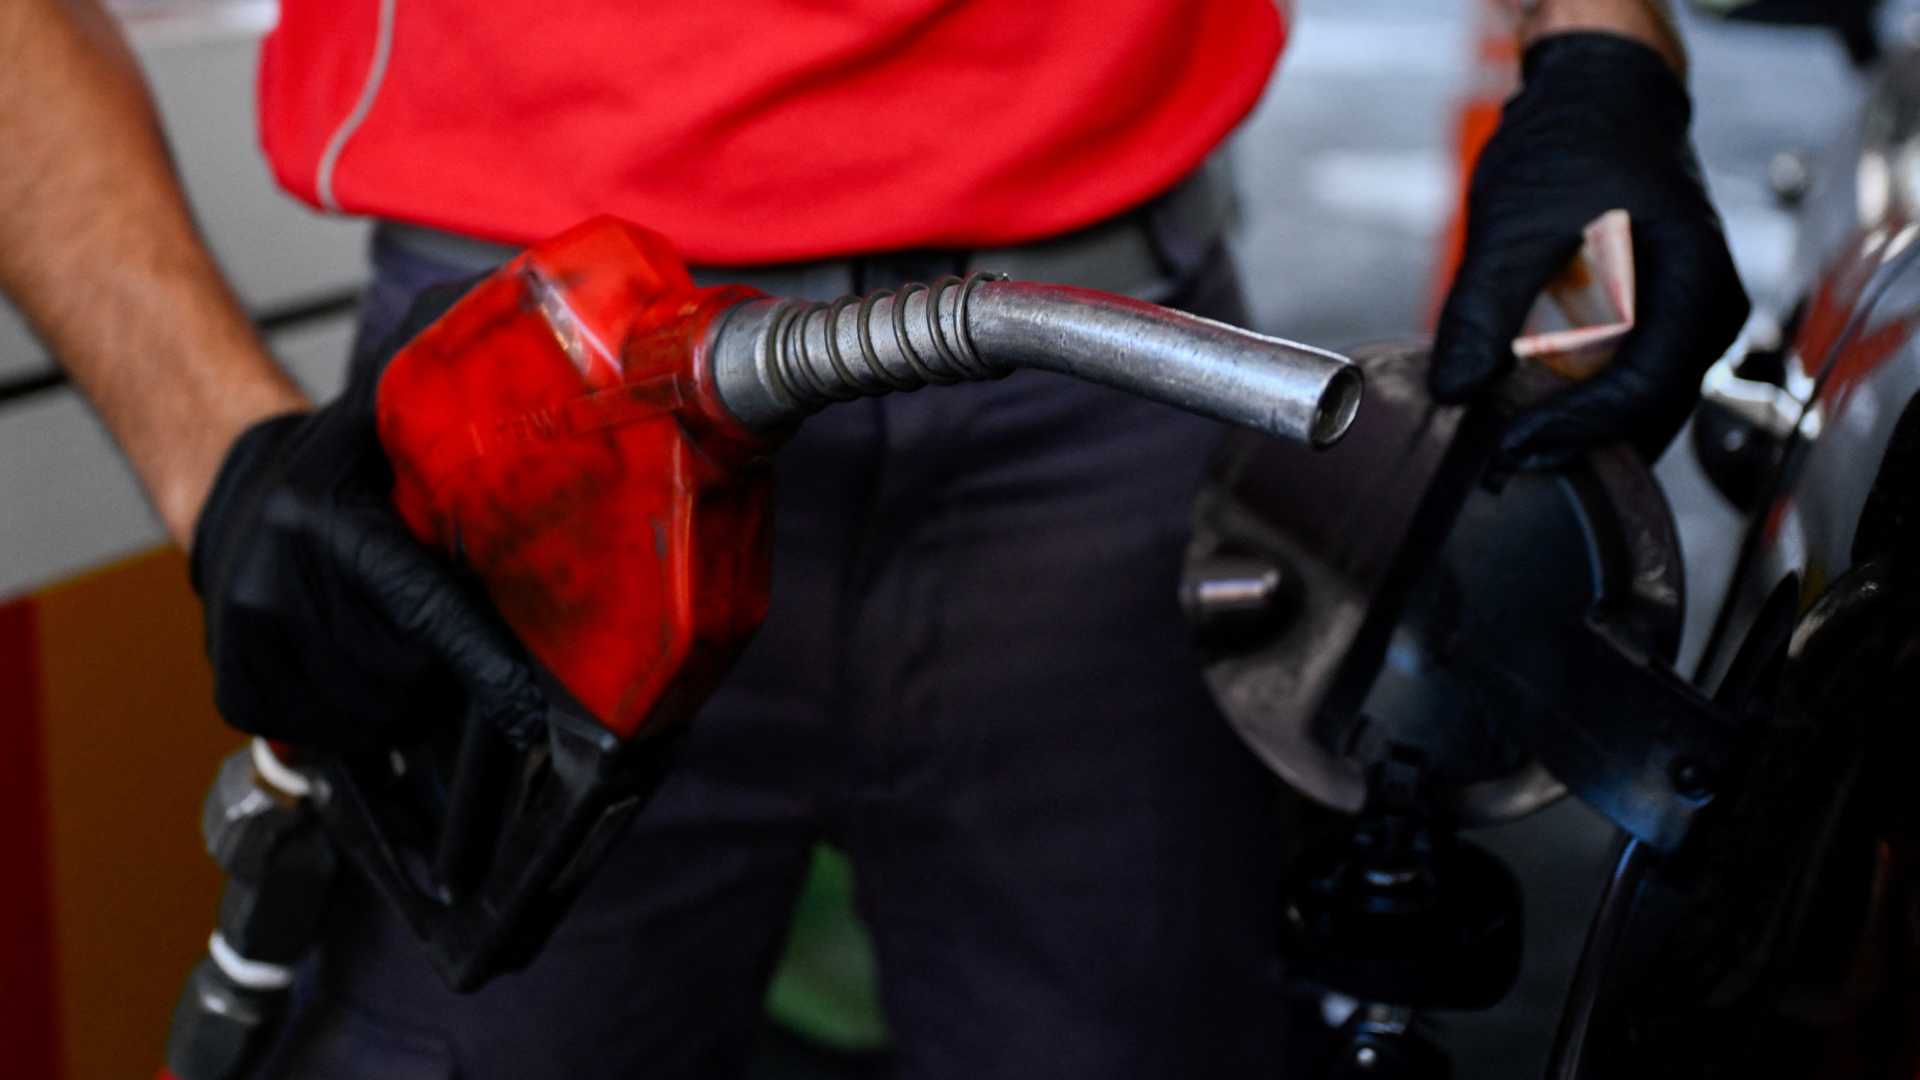 Aumentan precios de combustibles en segund semana de abril en Honduras